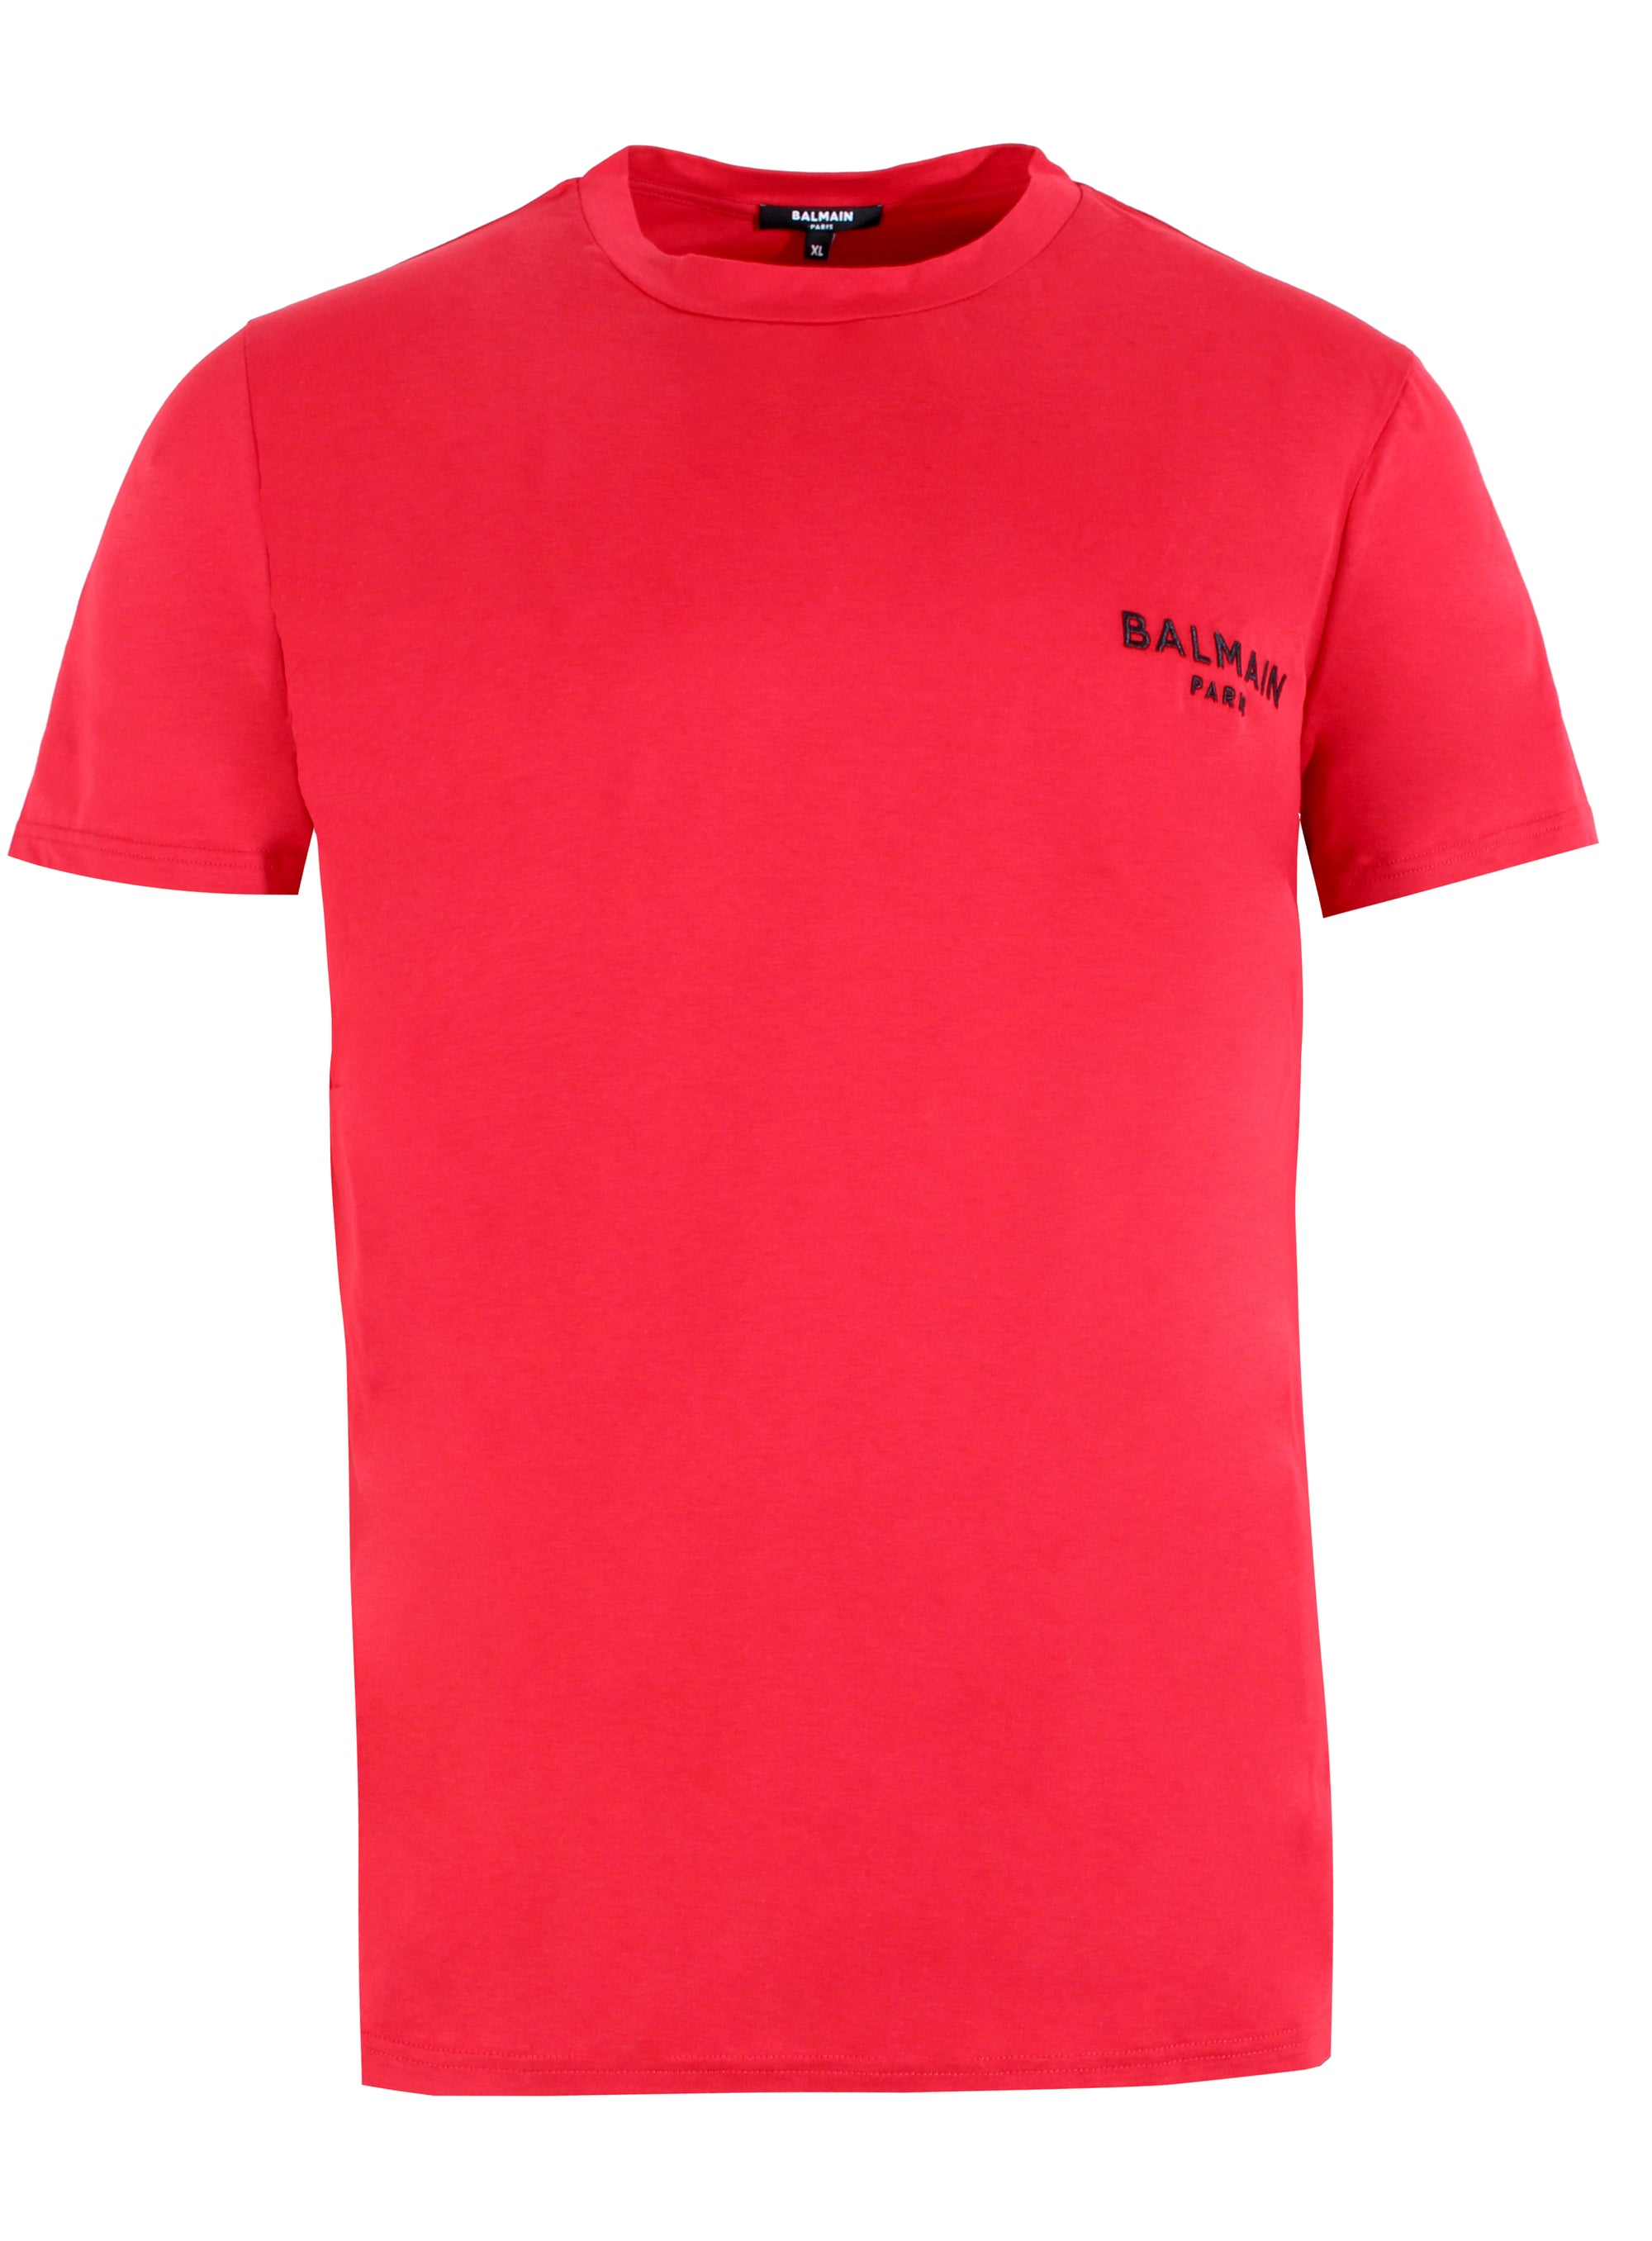 Men's Balmain Paris Logo Tee Shirt